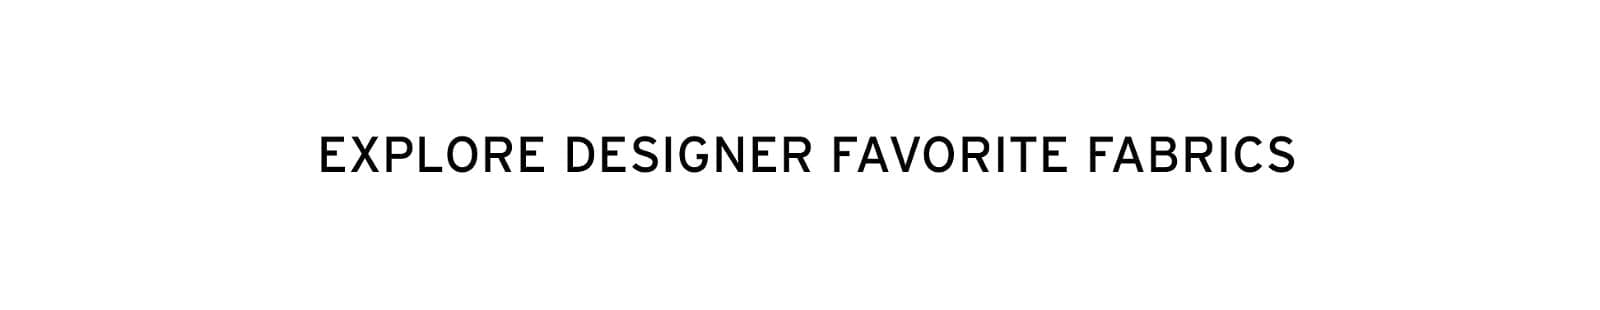 Explore designer favorite fabrics